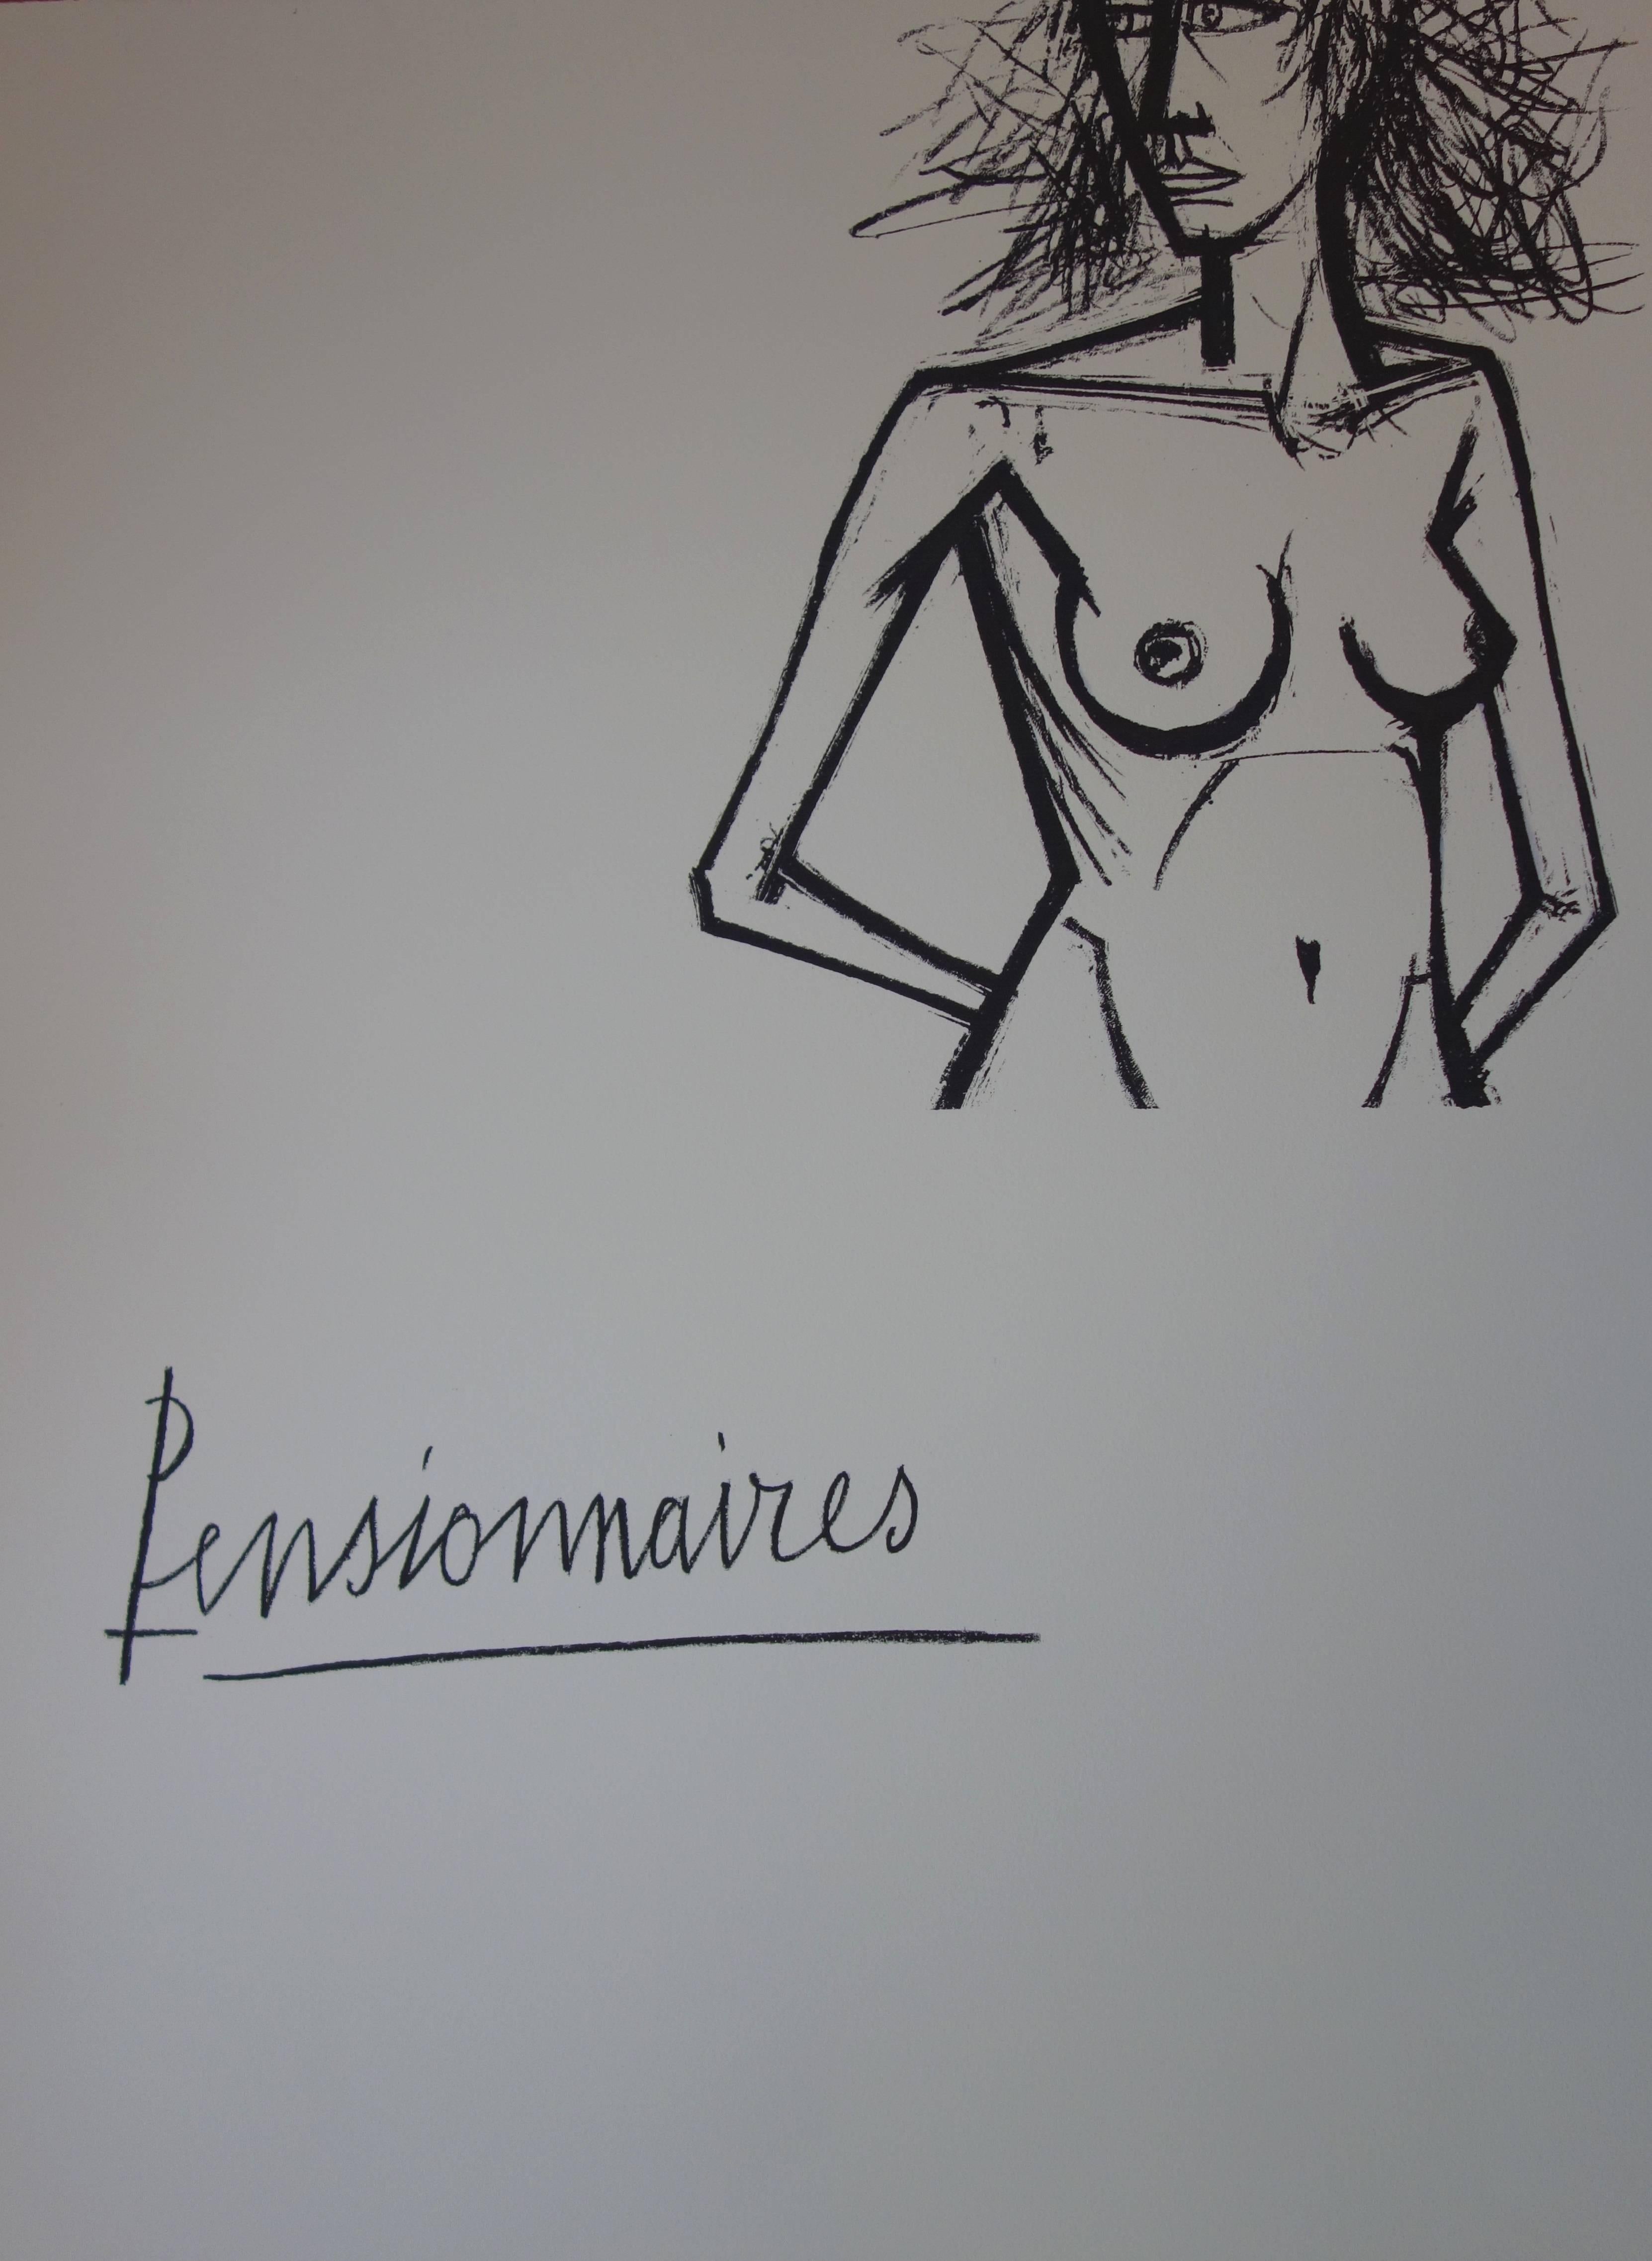 Bernard Buffet Nude Print - Women's Games : Ode en son Honneur - Original lithograph - 1970